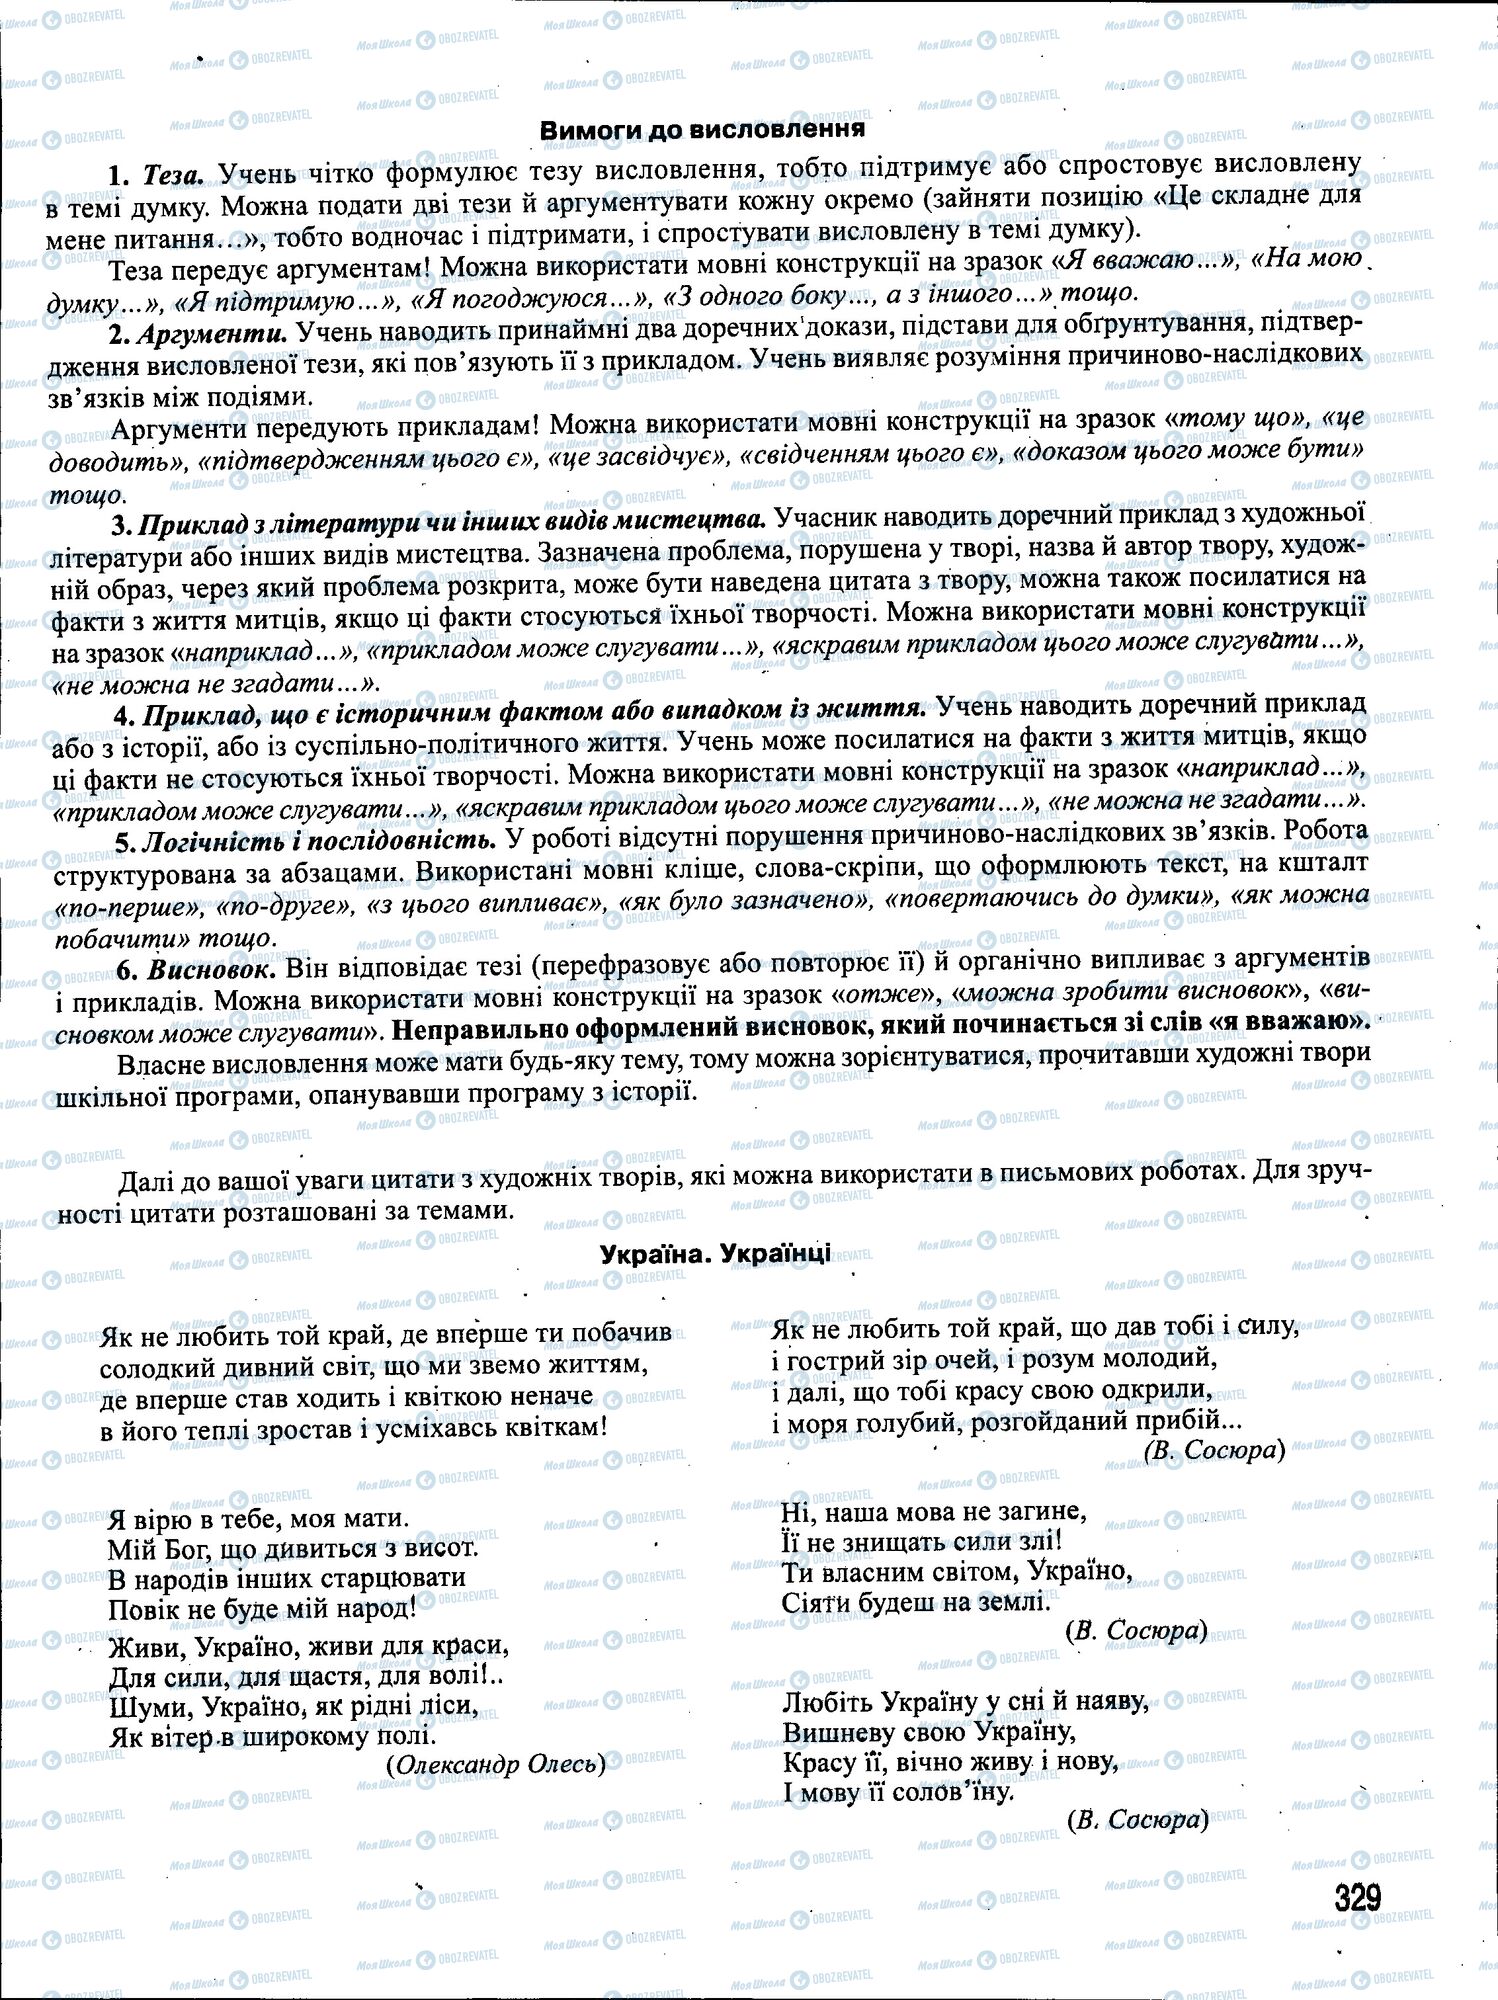 ЗНО Укр мова 11 класс страница 329